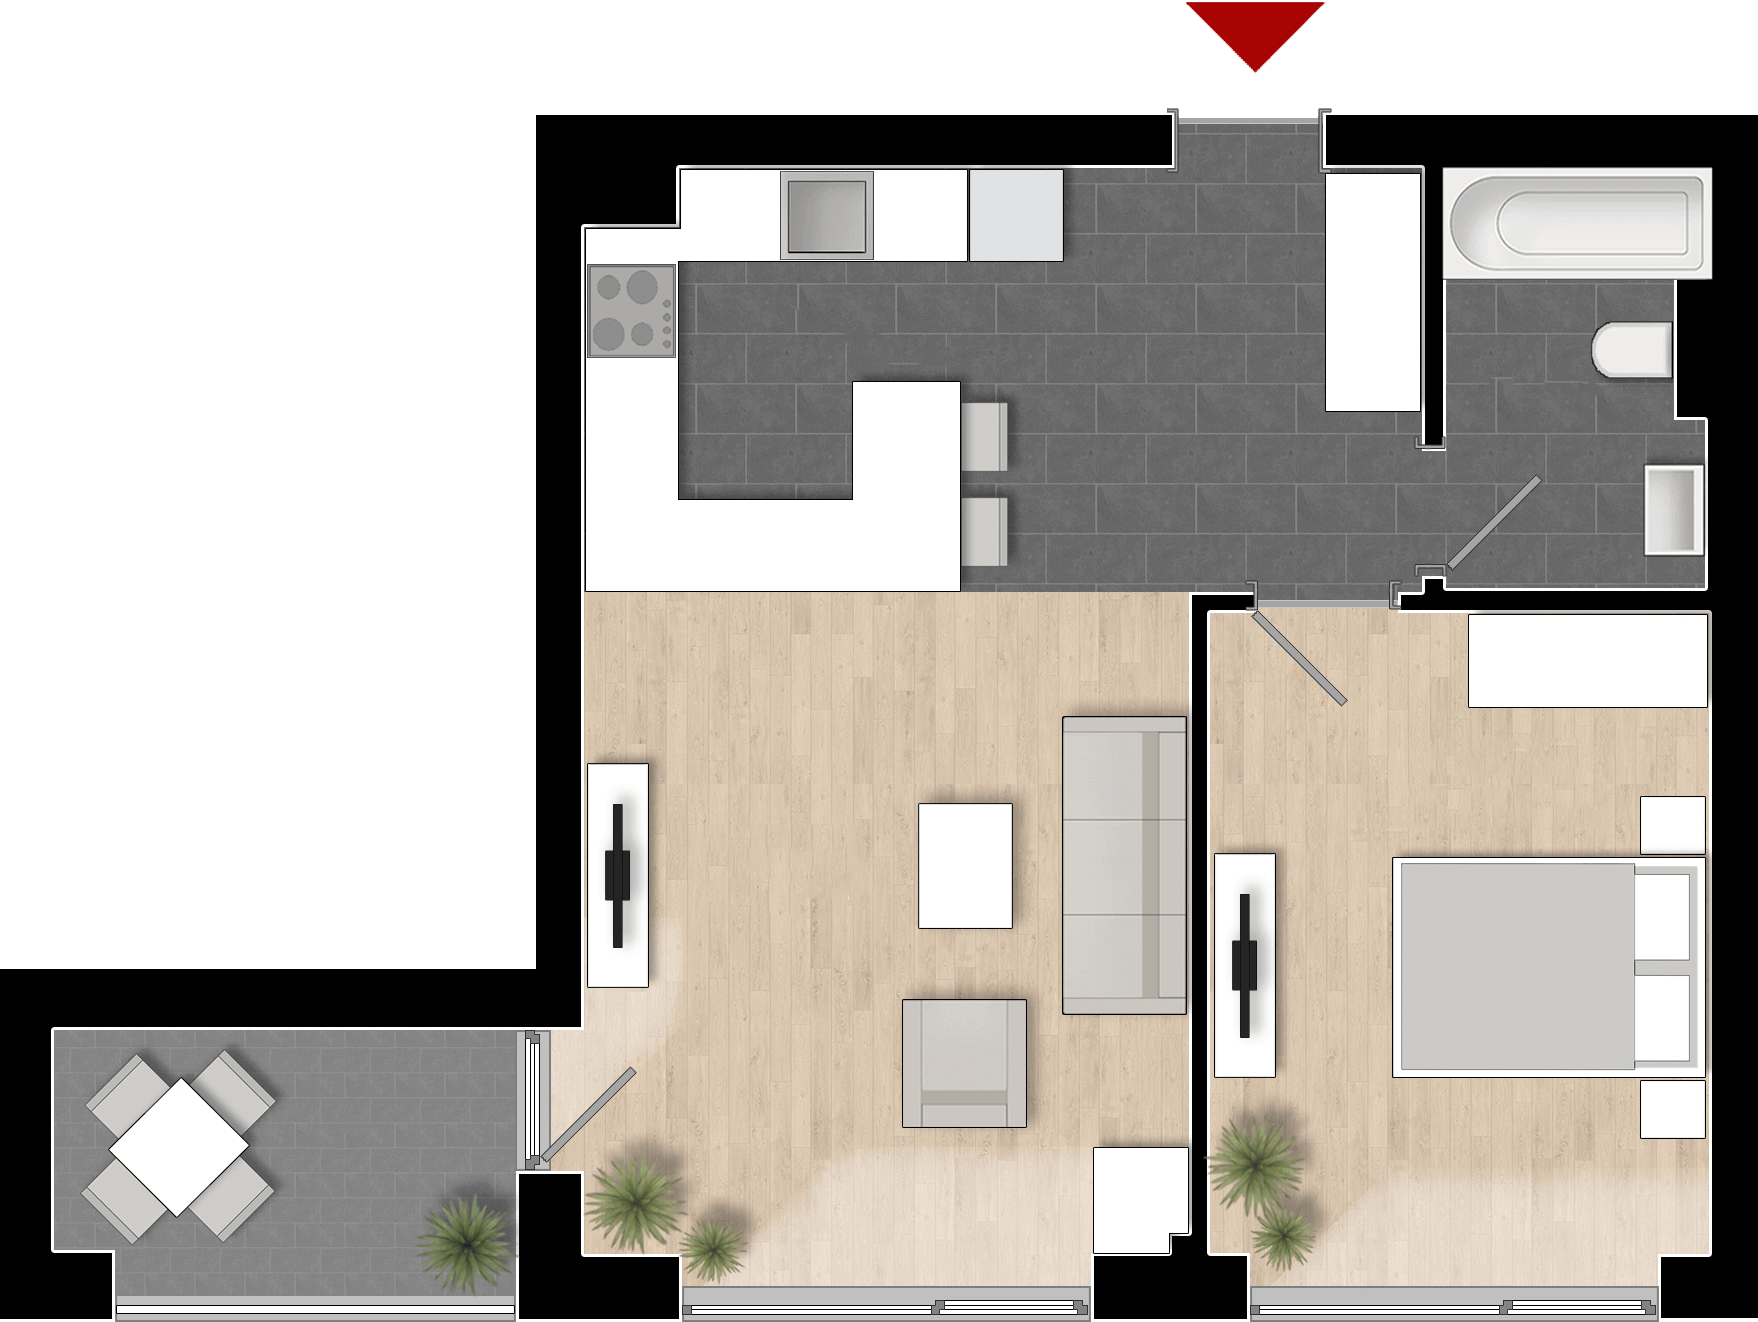  Apartament 712, Tip de apartament 1A cu 2 camere 